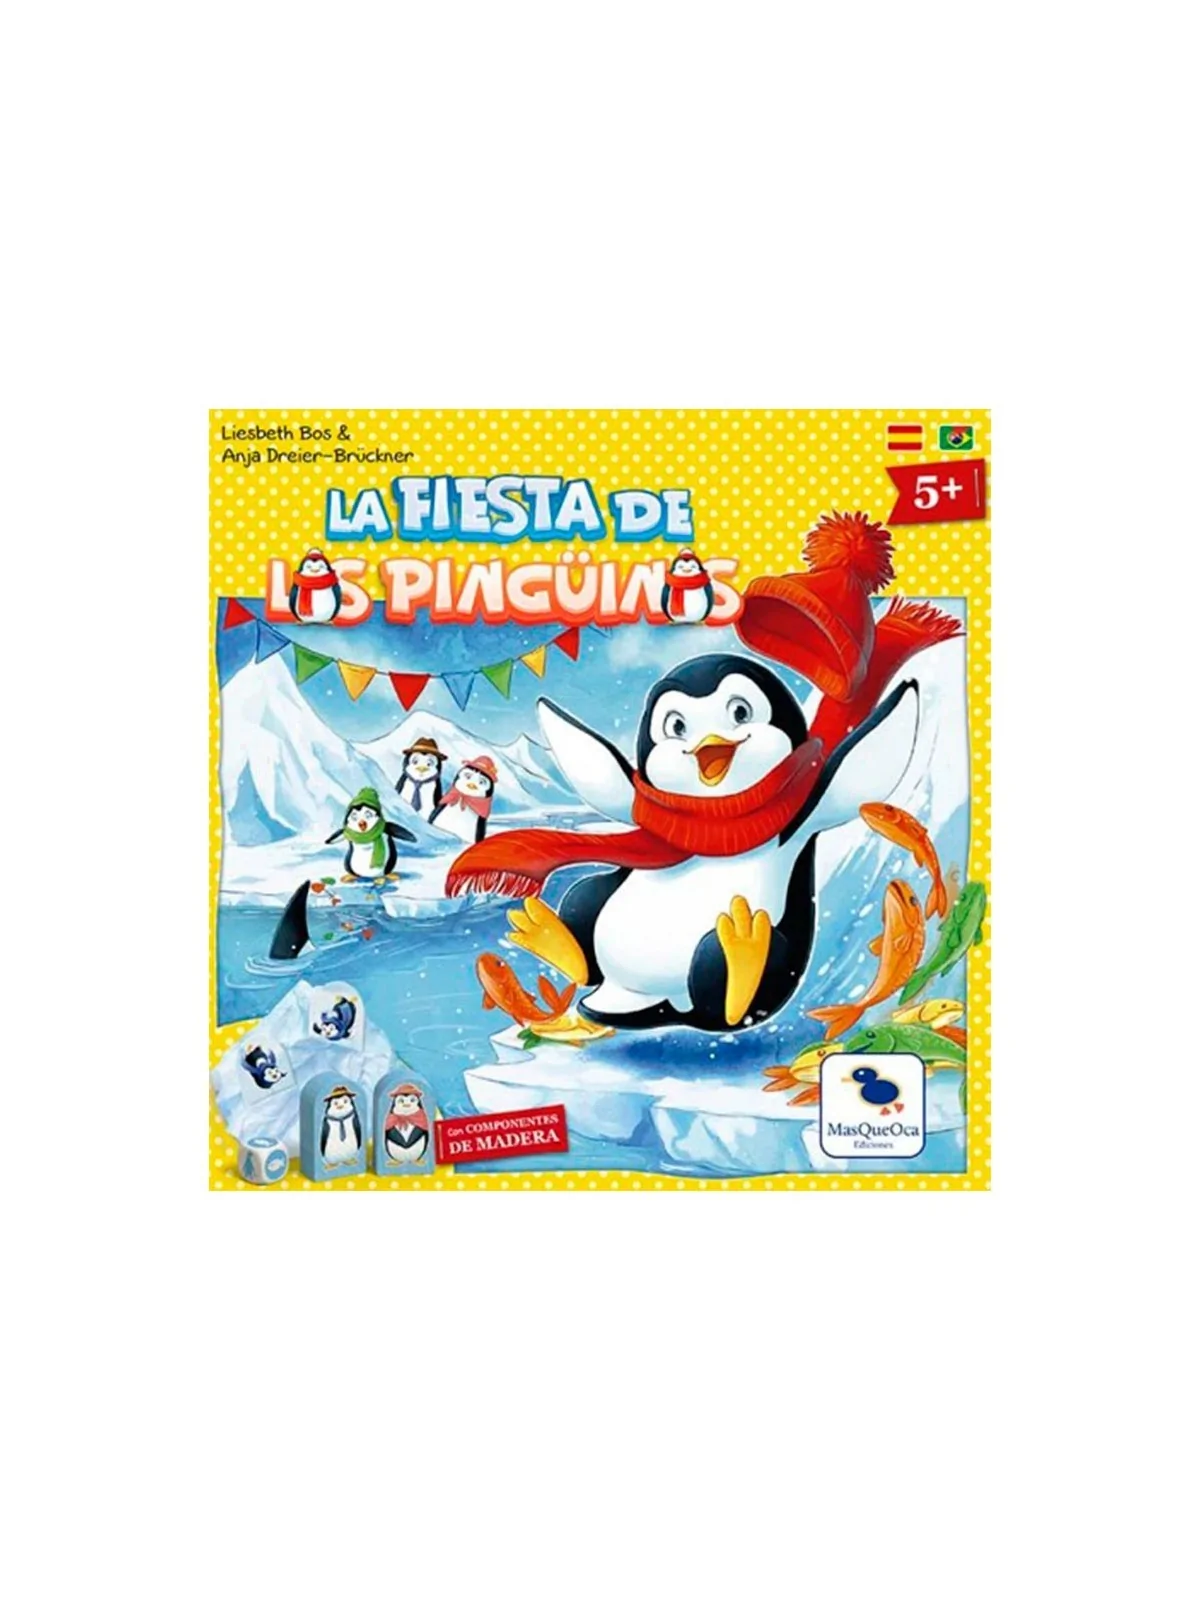 Comprar La Fiesta de los Pingüinos barato al mejor precio 22,46 € de M